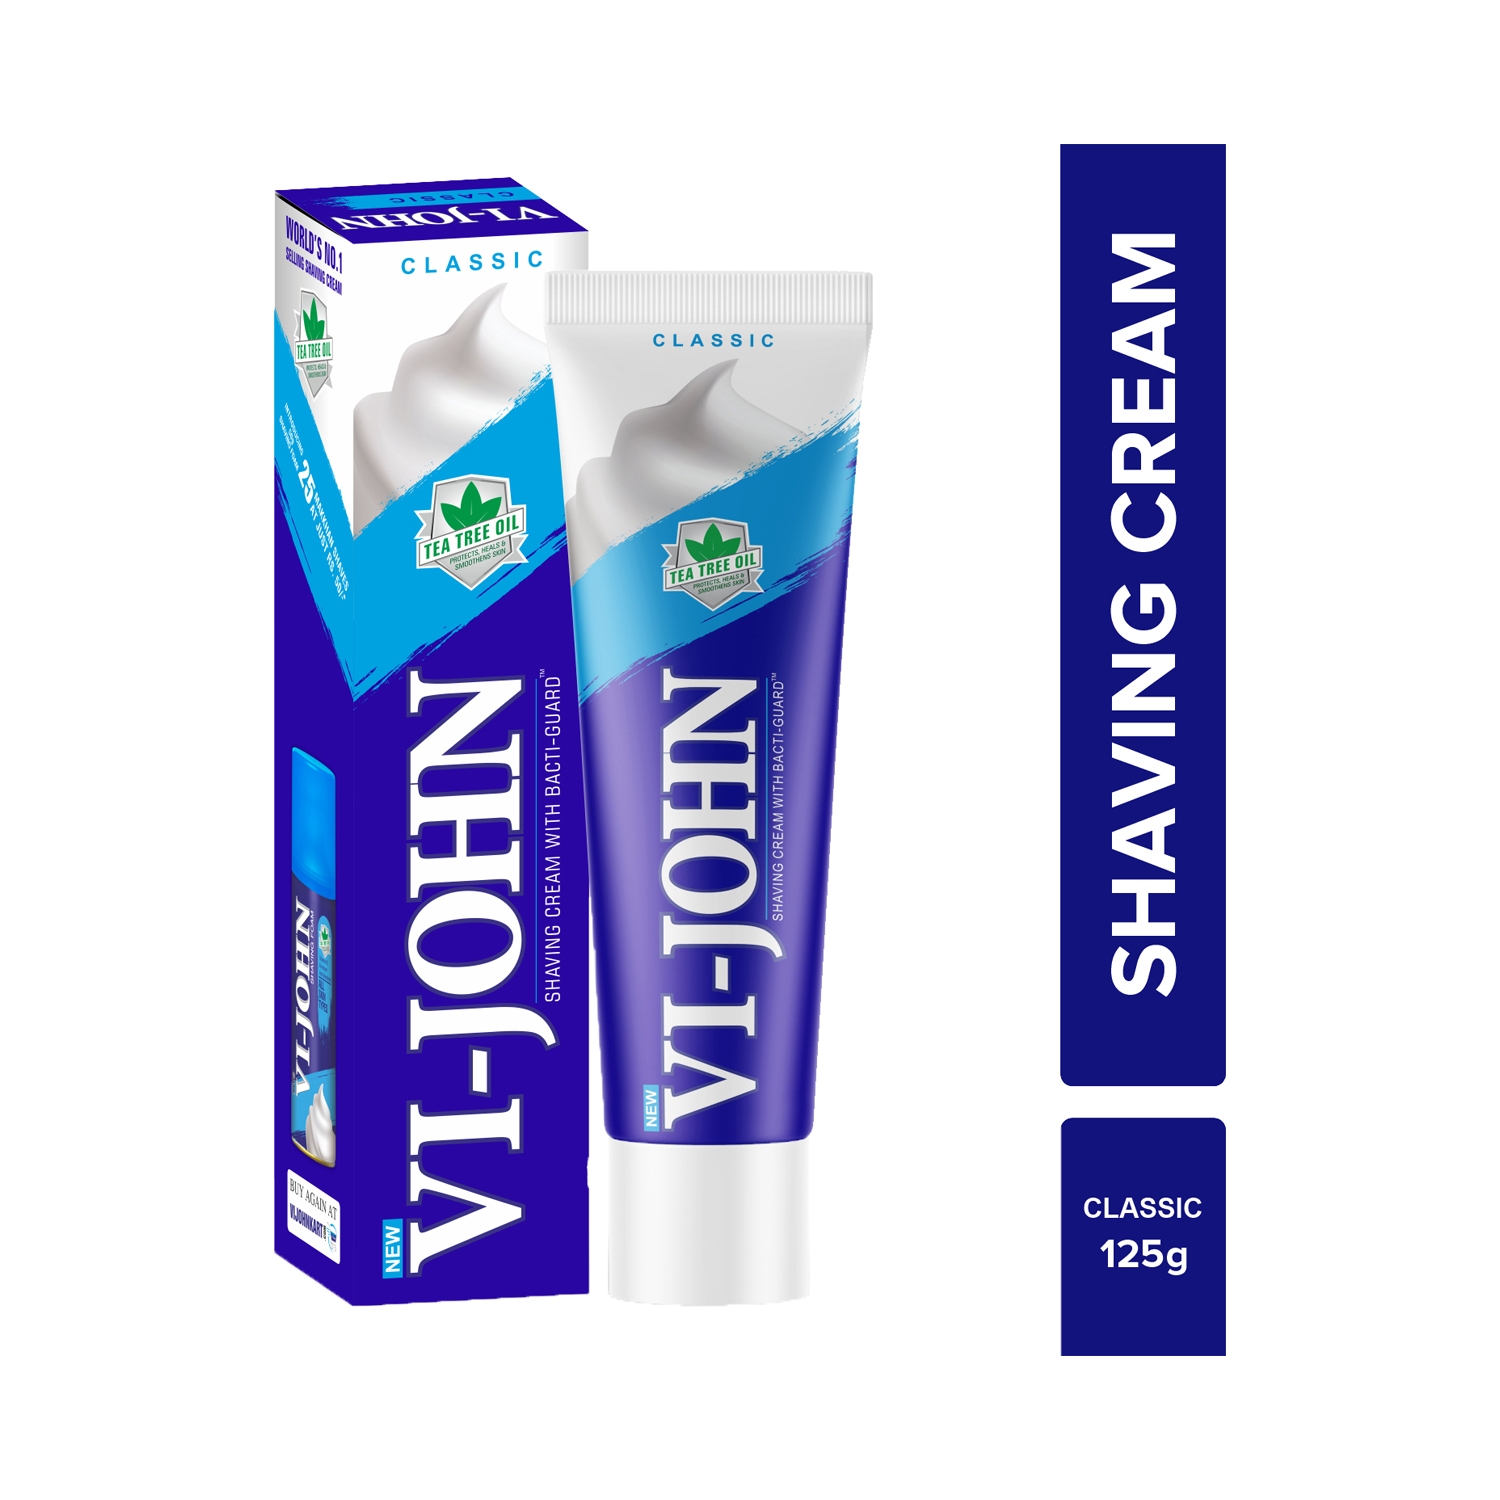 VI-JOHN | VI-JOHN Classic Shaving Cream With Tea Tree Oil & Bacti-Guard (125g)